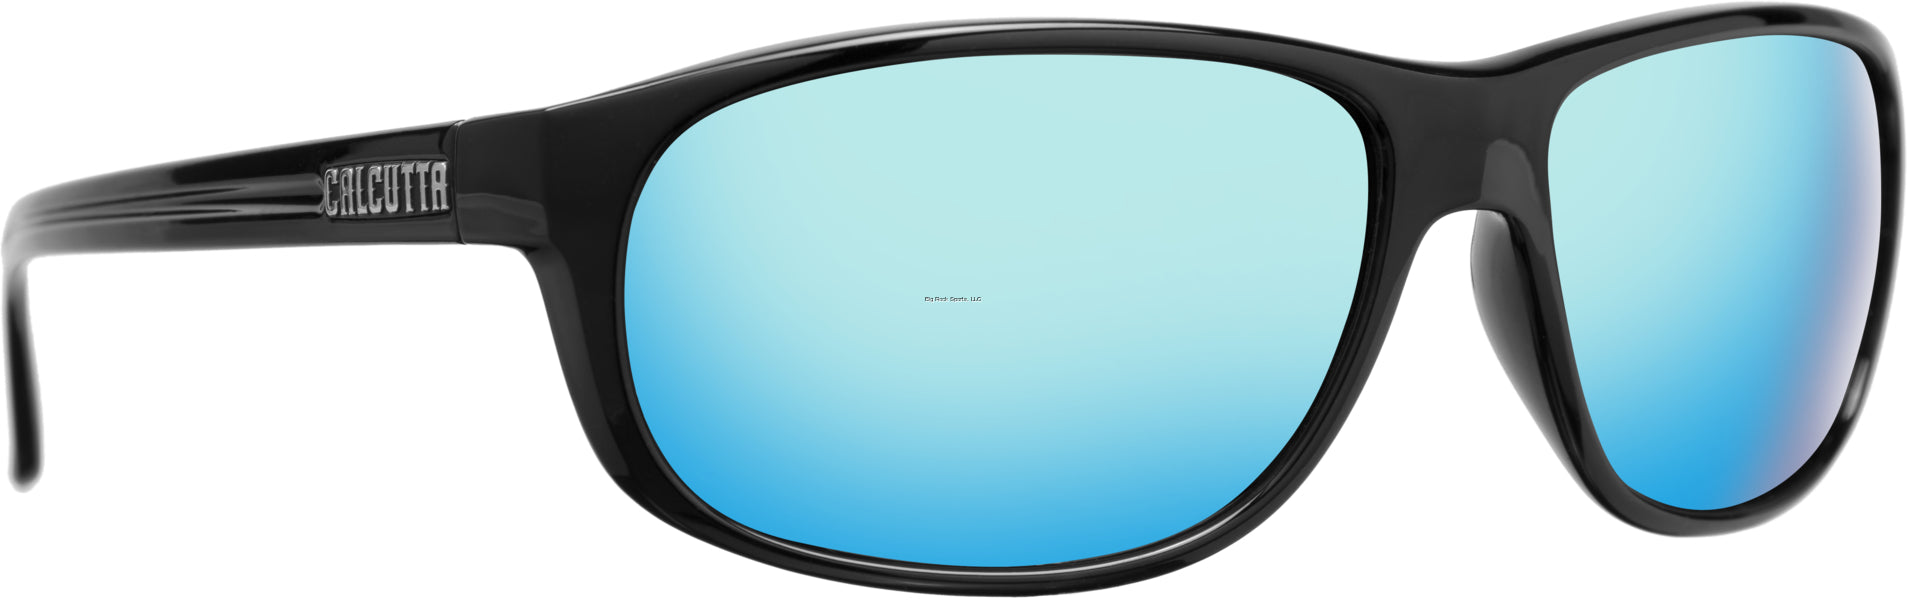 Calcutta Walker Discover Series Sunglasses Shiny Black/Blue Mirror